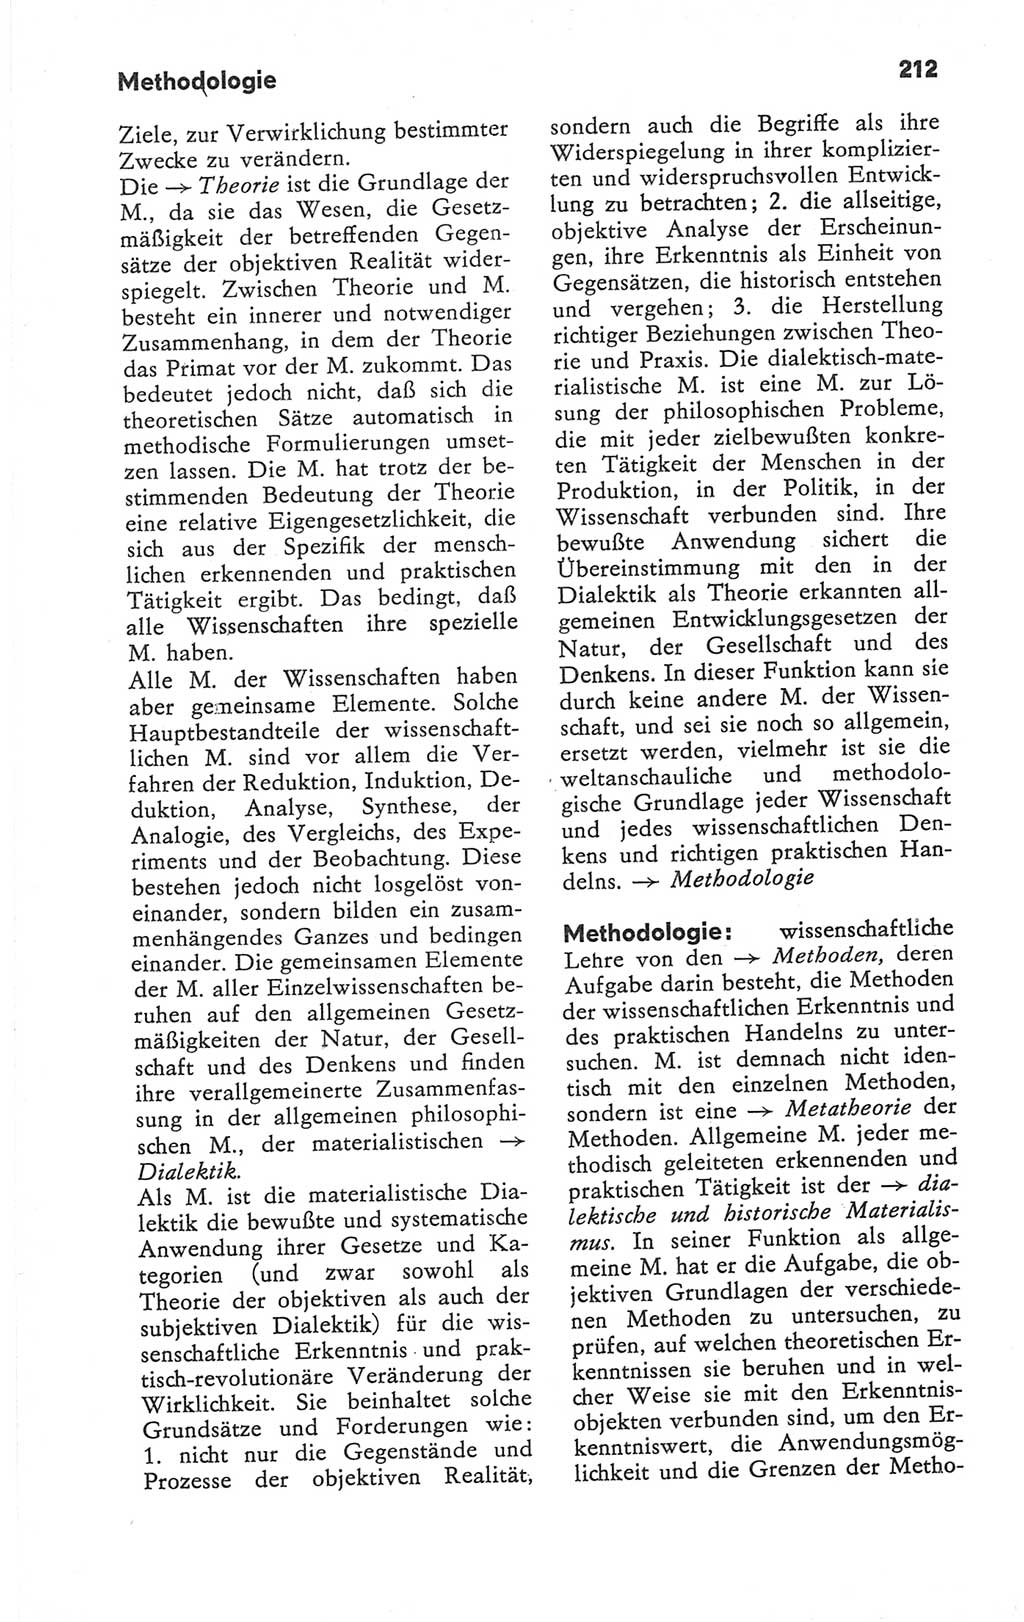 Kleines Wörterbuch der marxistisch-leninistischen Philosophie [Deutsche Demokratische Republik (DDR)] 1979, Seite 212 (Kl. Wb. ML Phil. DDR 1979, S. 212)